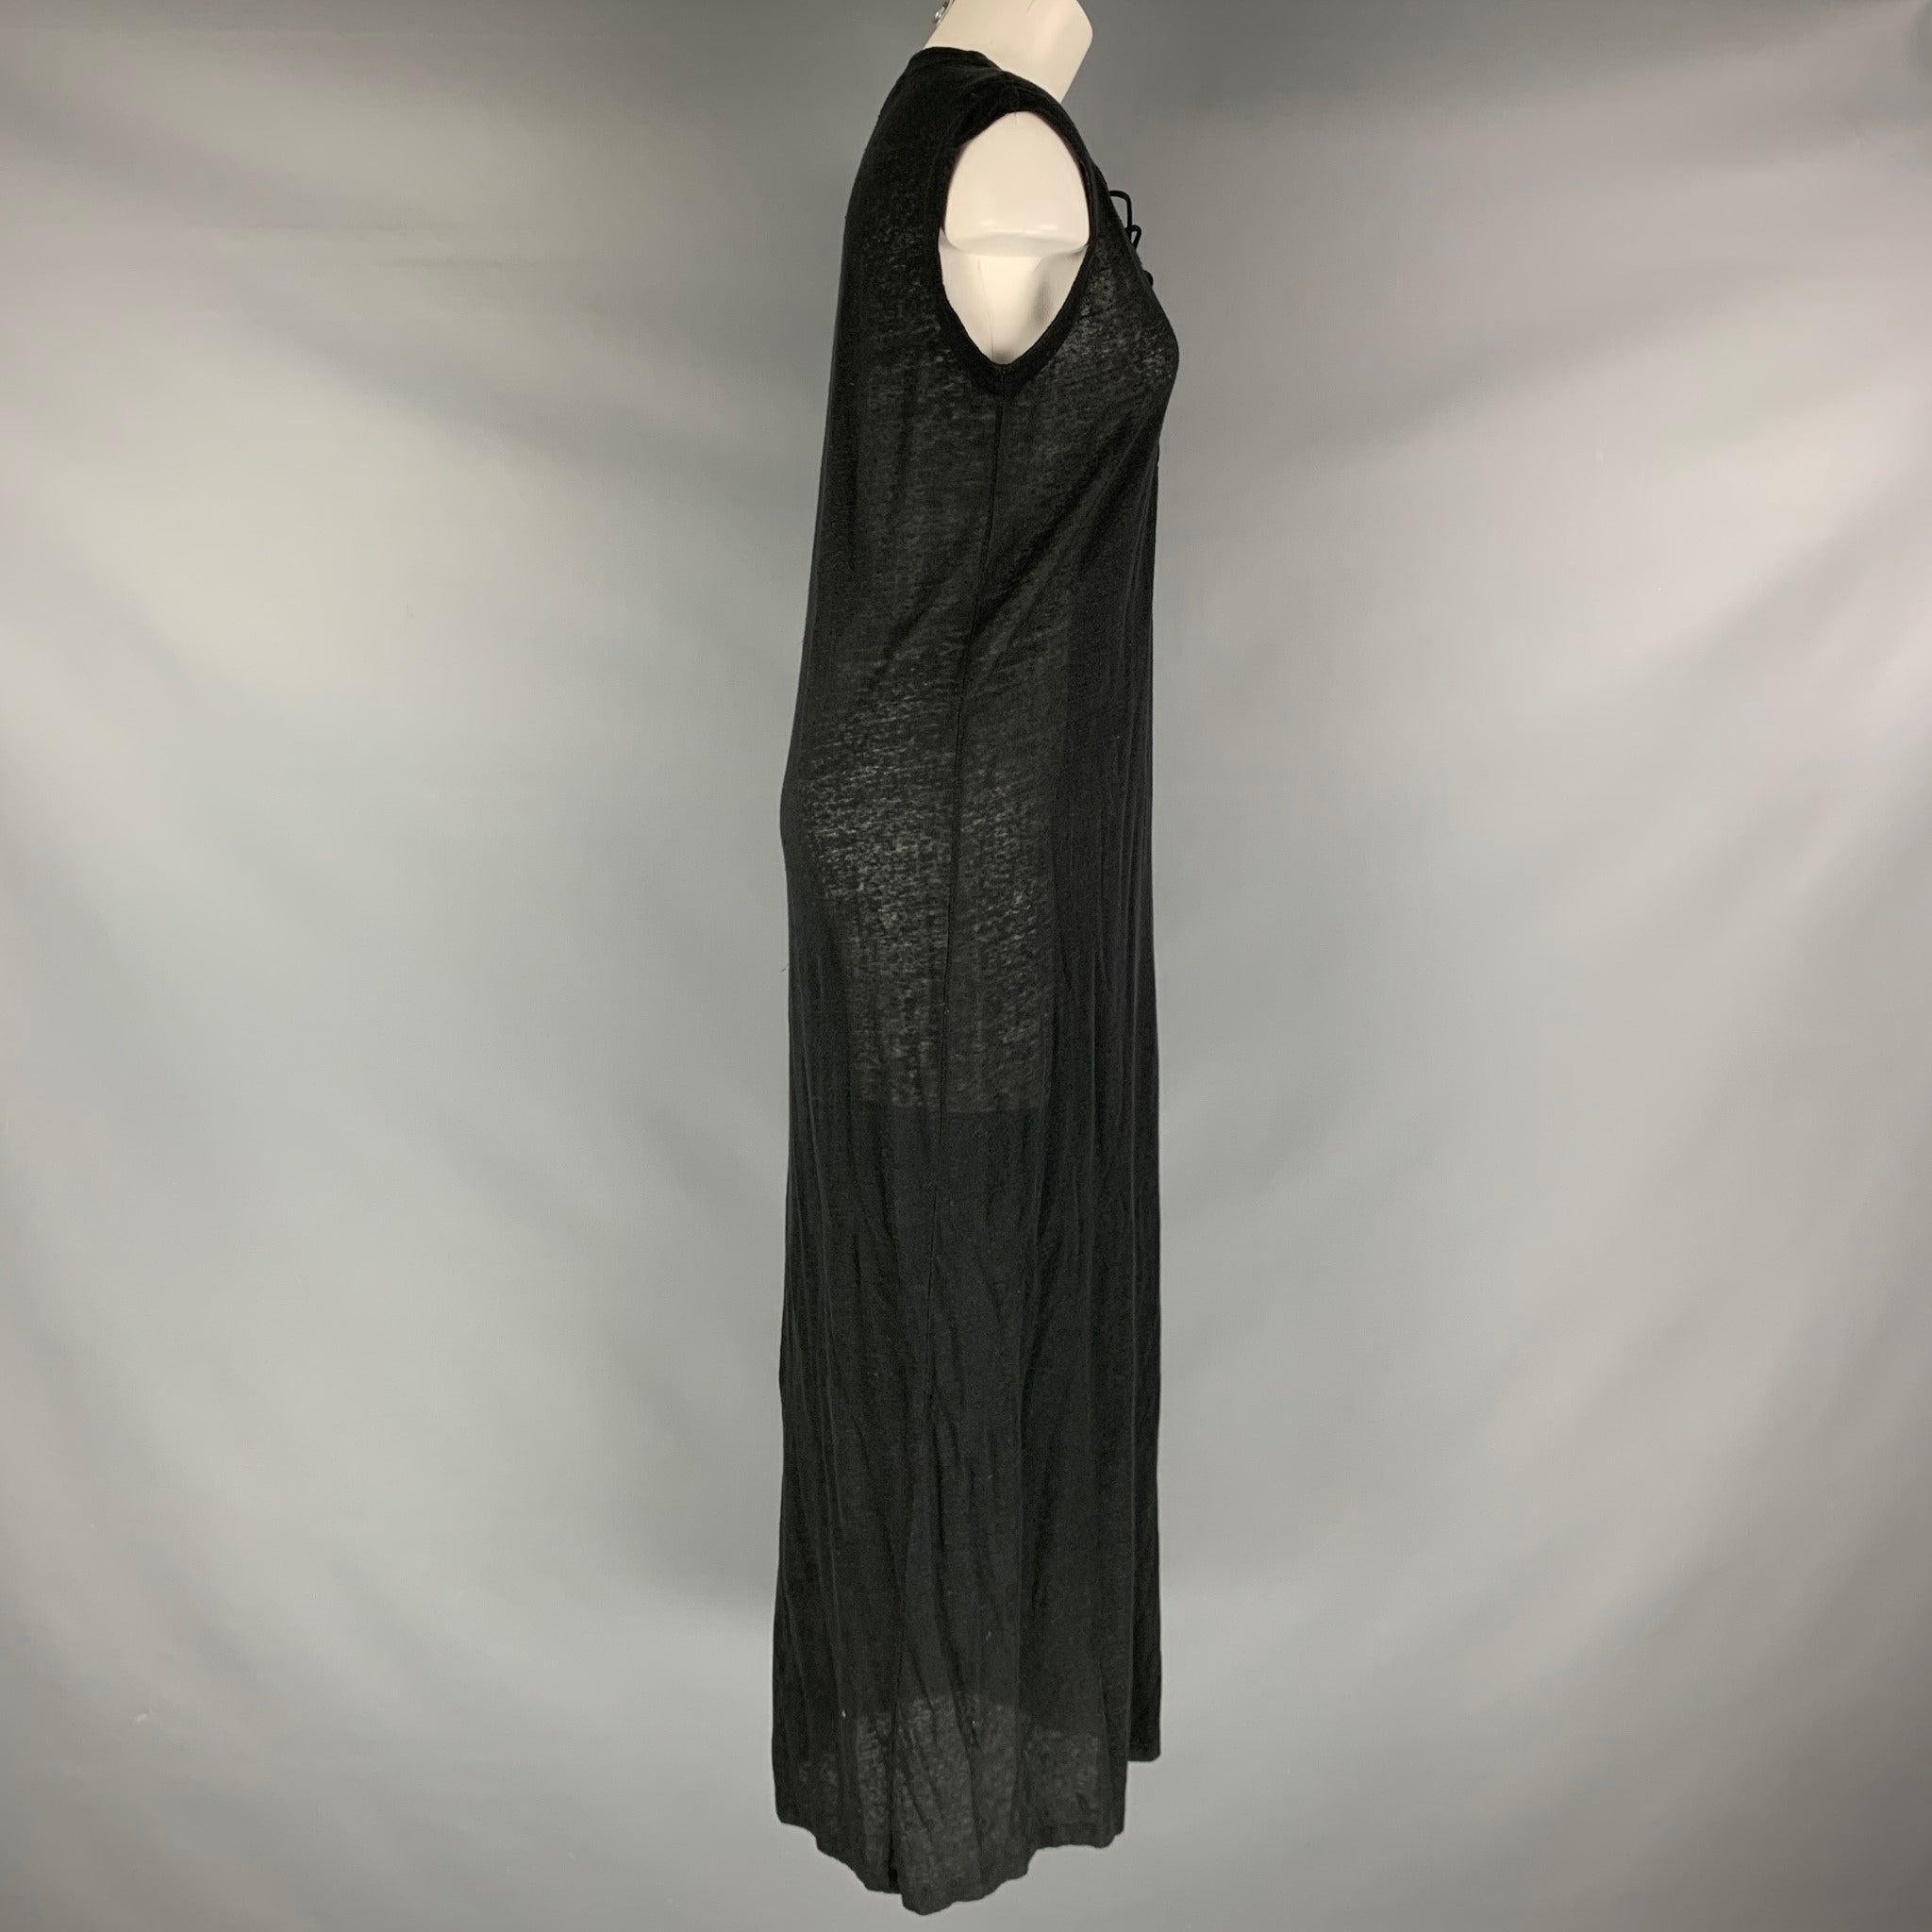 La robe longue 'Daisy 17S' d'Iro est réalisée en maille de coton mélangé noire partiellement transparente et présente une poitrine lacée et une silhouette de robe droite. Excellent état d'origine. 

Marqué :  Épaules : 17.5 pouces Buste : 42 pouces